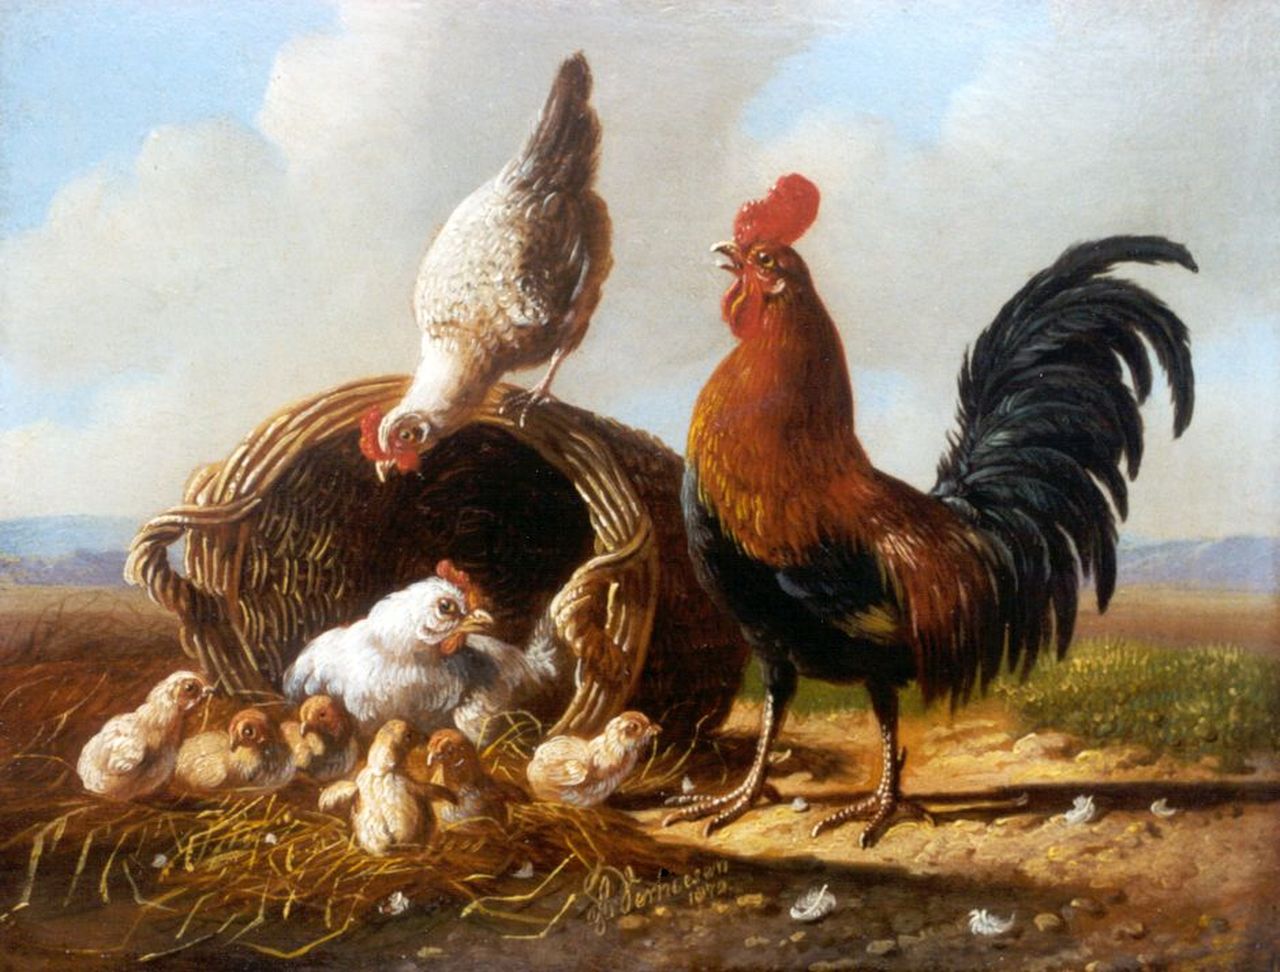 Verhoesen A.  | Albertus Verhoesen, Haan met kippen en kuikens bij een wilgentenen mand, olieverf op paneel 13,5 x 17,1 cm, gesigneerd middenonder en gedateerd 1872